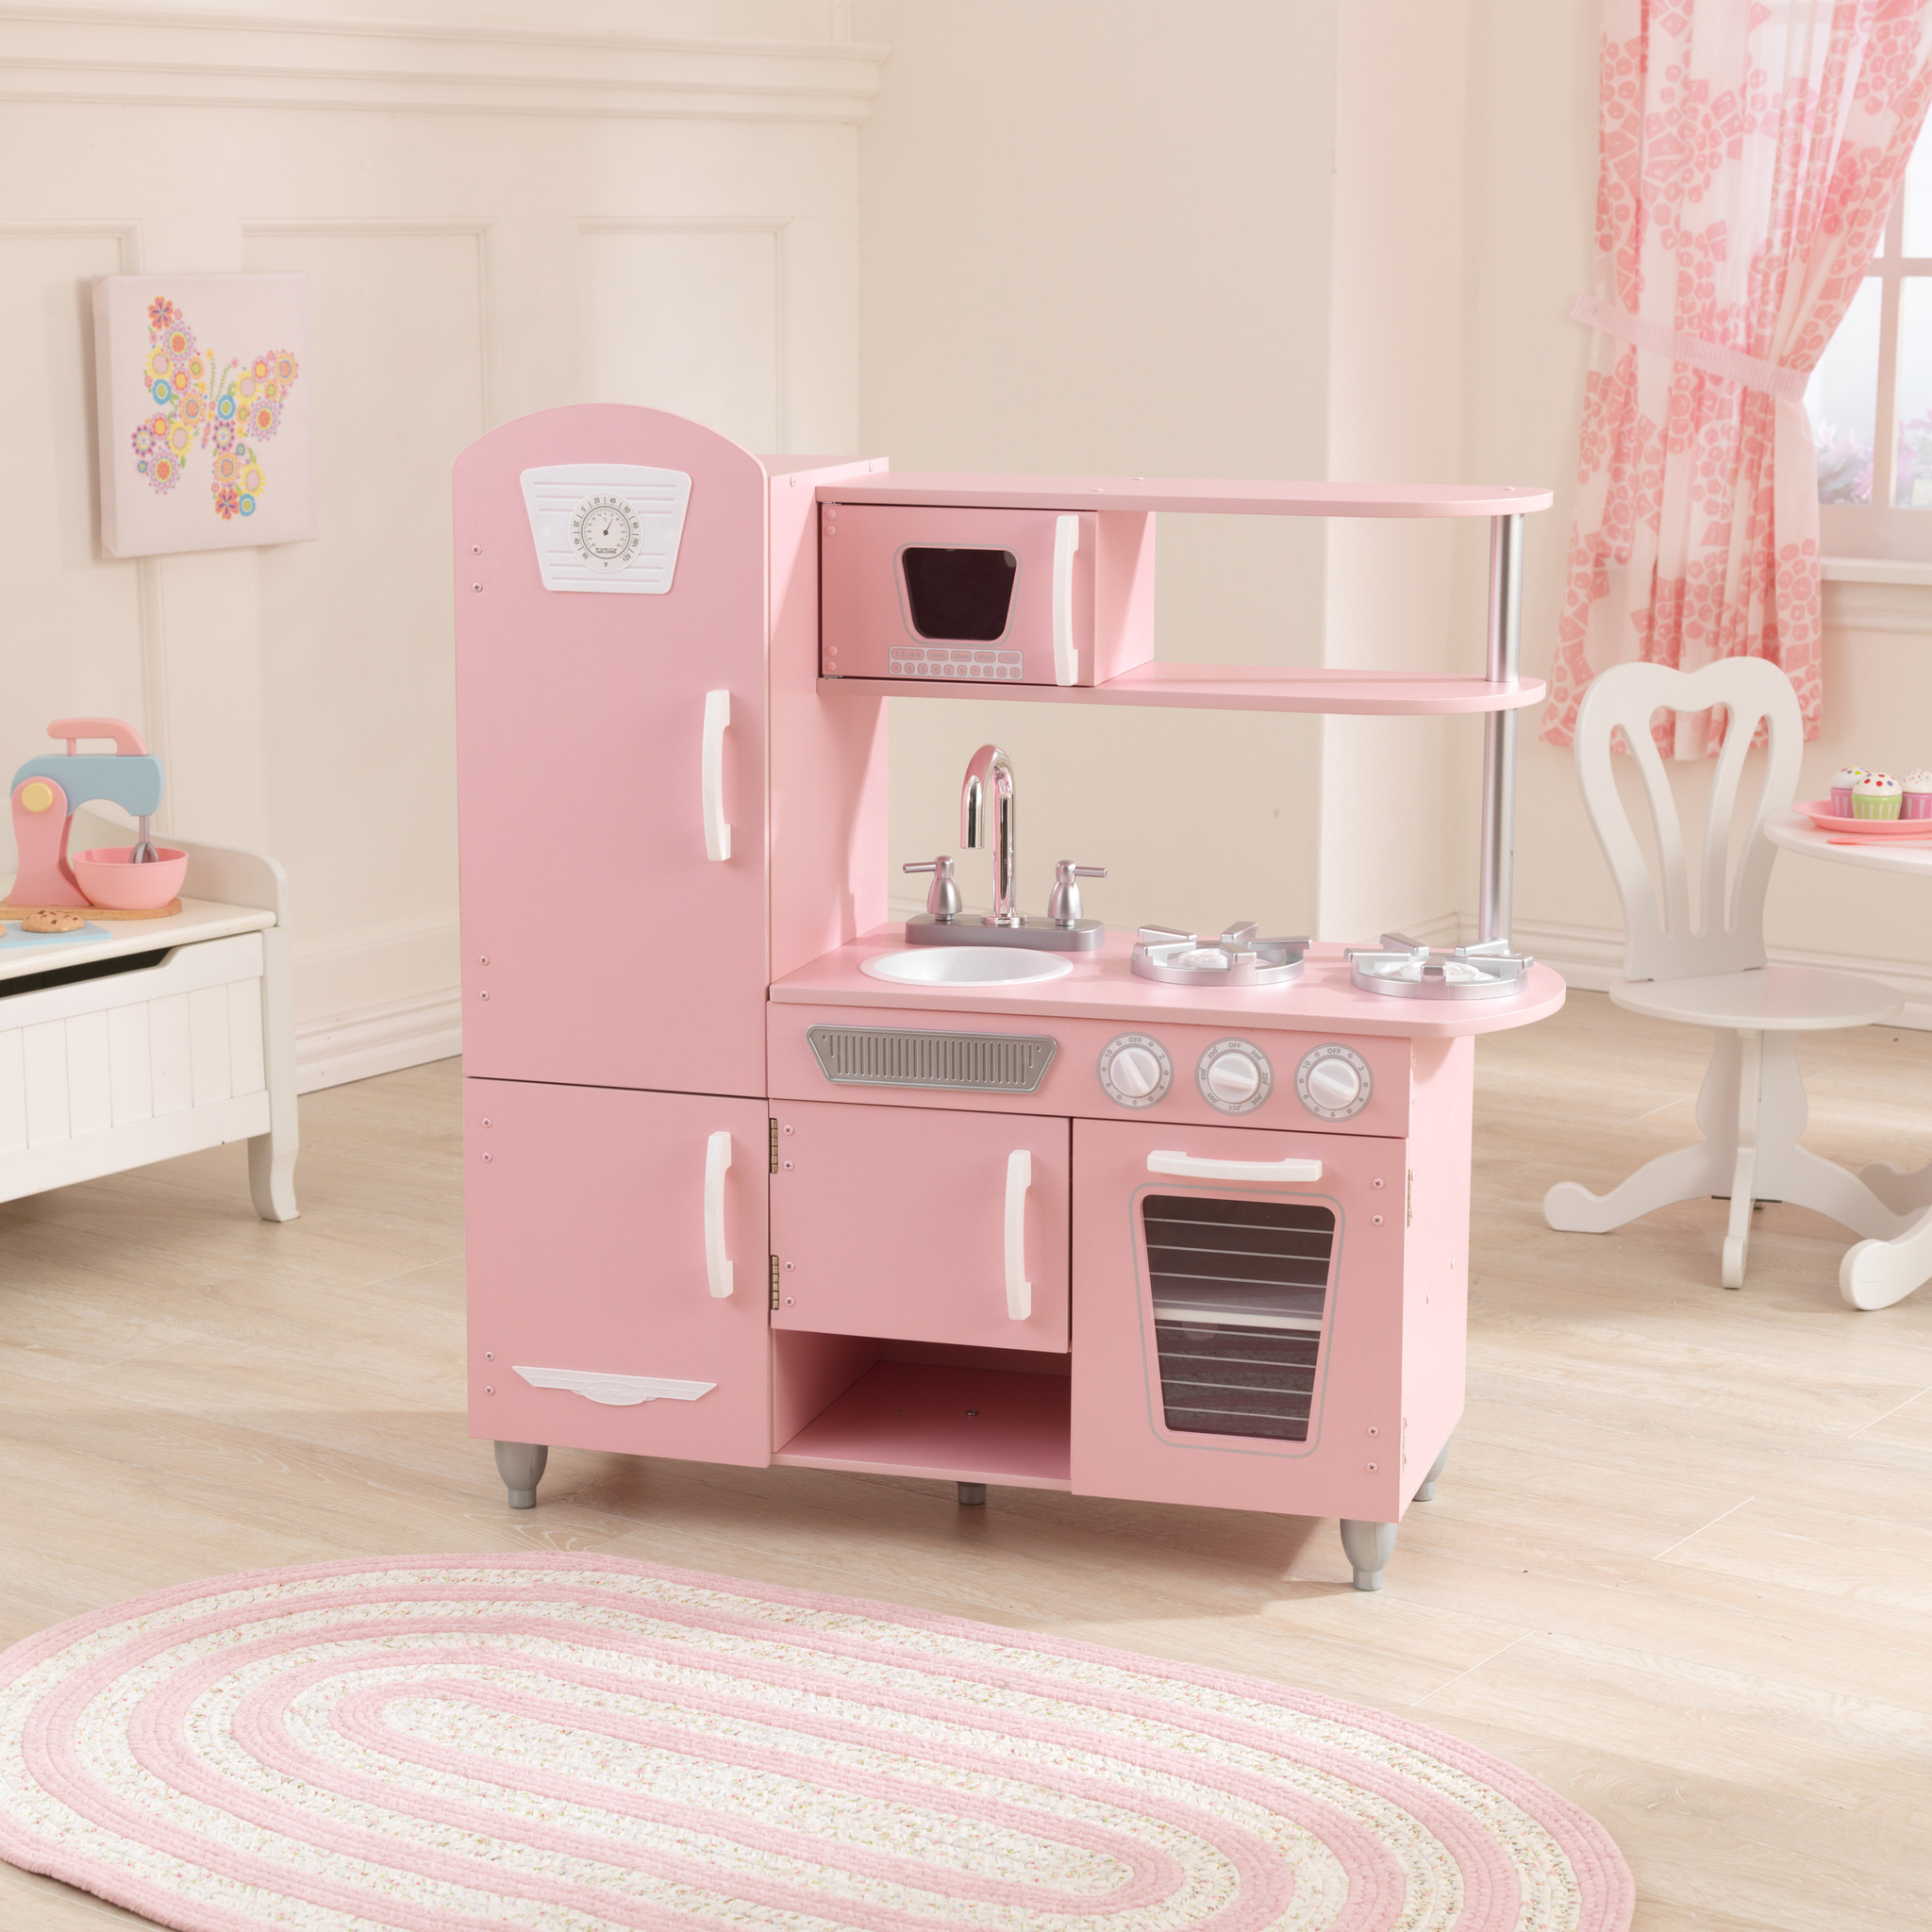 pijn emulsie Actief Kinderkeuken Roze - Vintage retro keukentje voor kinderen - Kinderspel ®